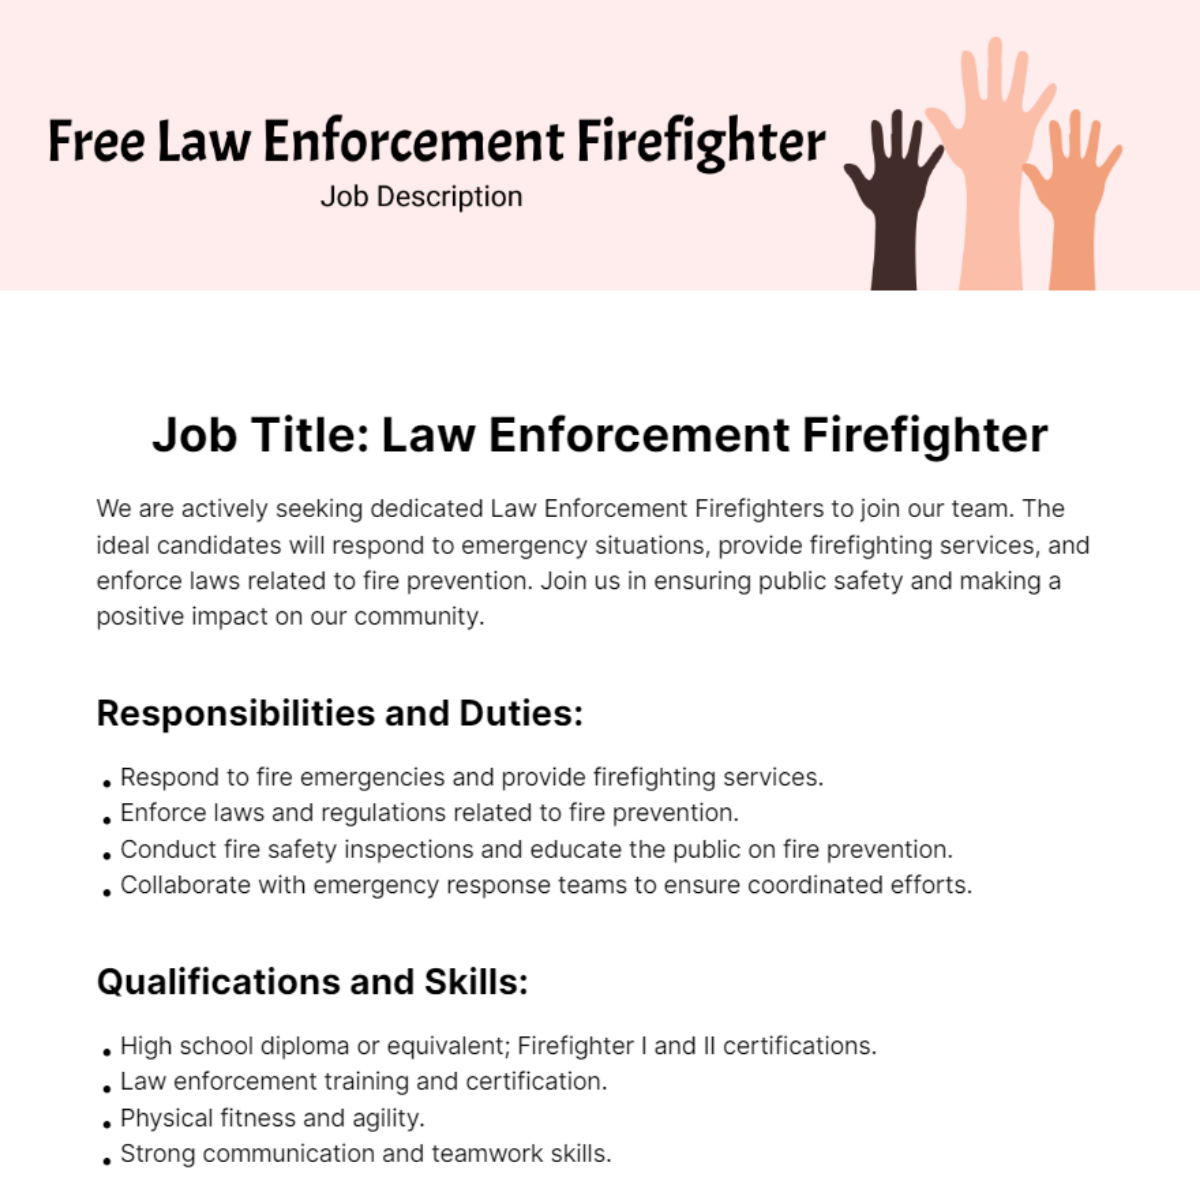 Free Law Enforcement Firefighter Job Description Template